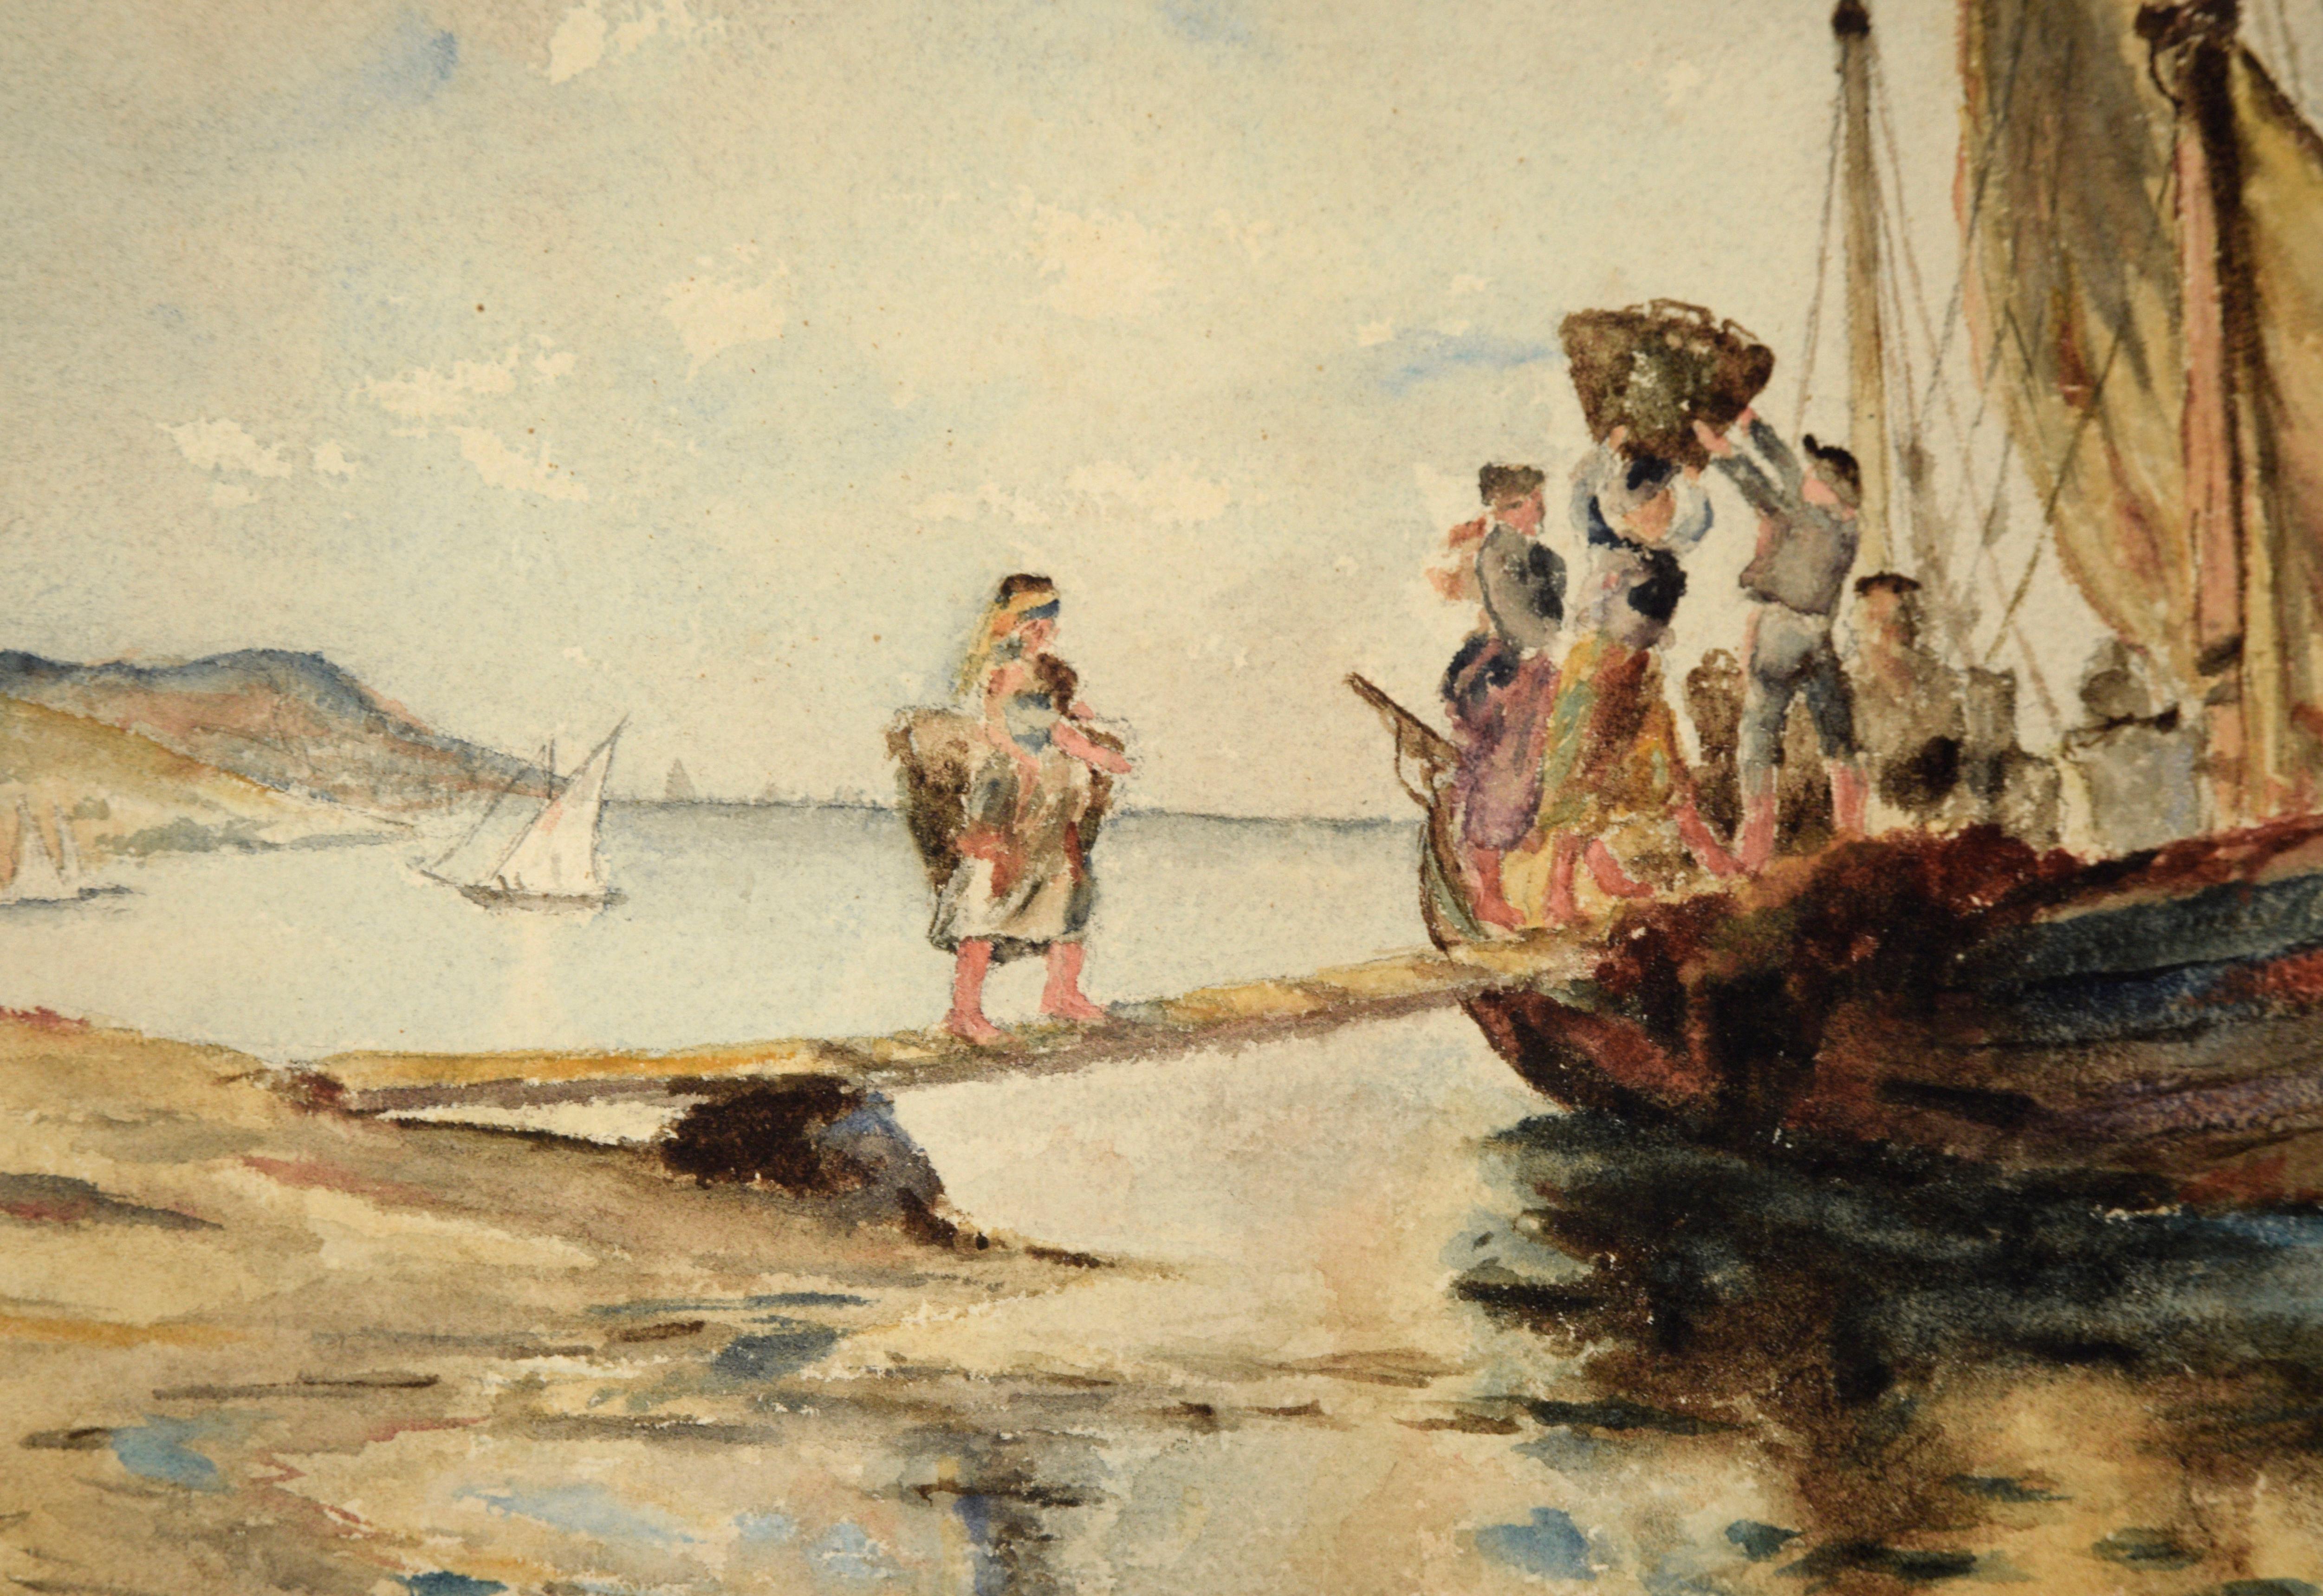 Scène côtière française en Bretagne avec un navire marchand chargeant du poisson et des gens, par un artiste inconnu. Un voilier est ancré sur une plage. Une rampe s'étend du bateau jusqu'au rivage, et des personnes chargent des paniers de